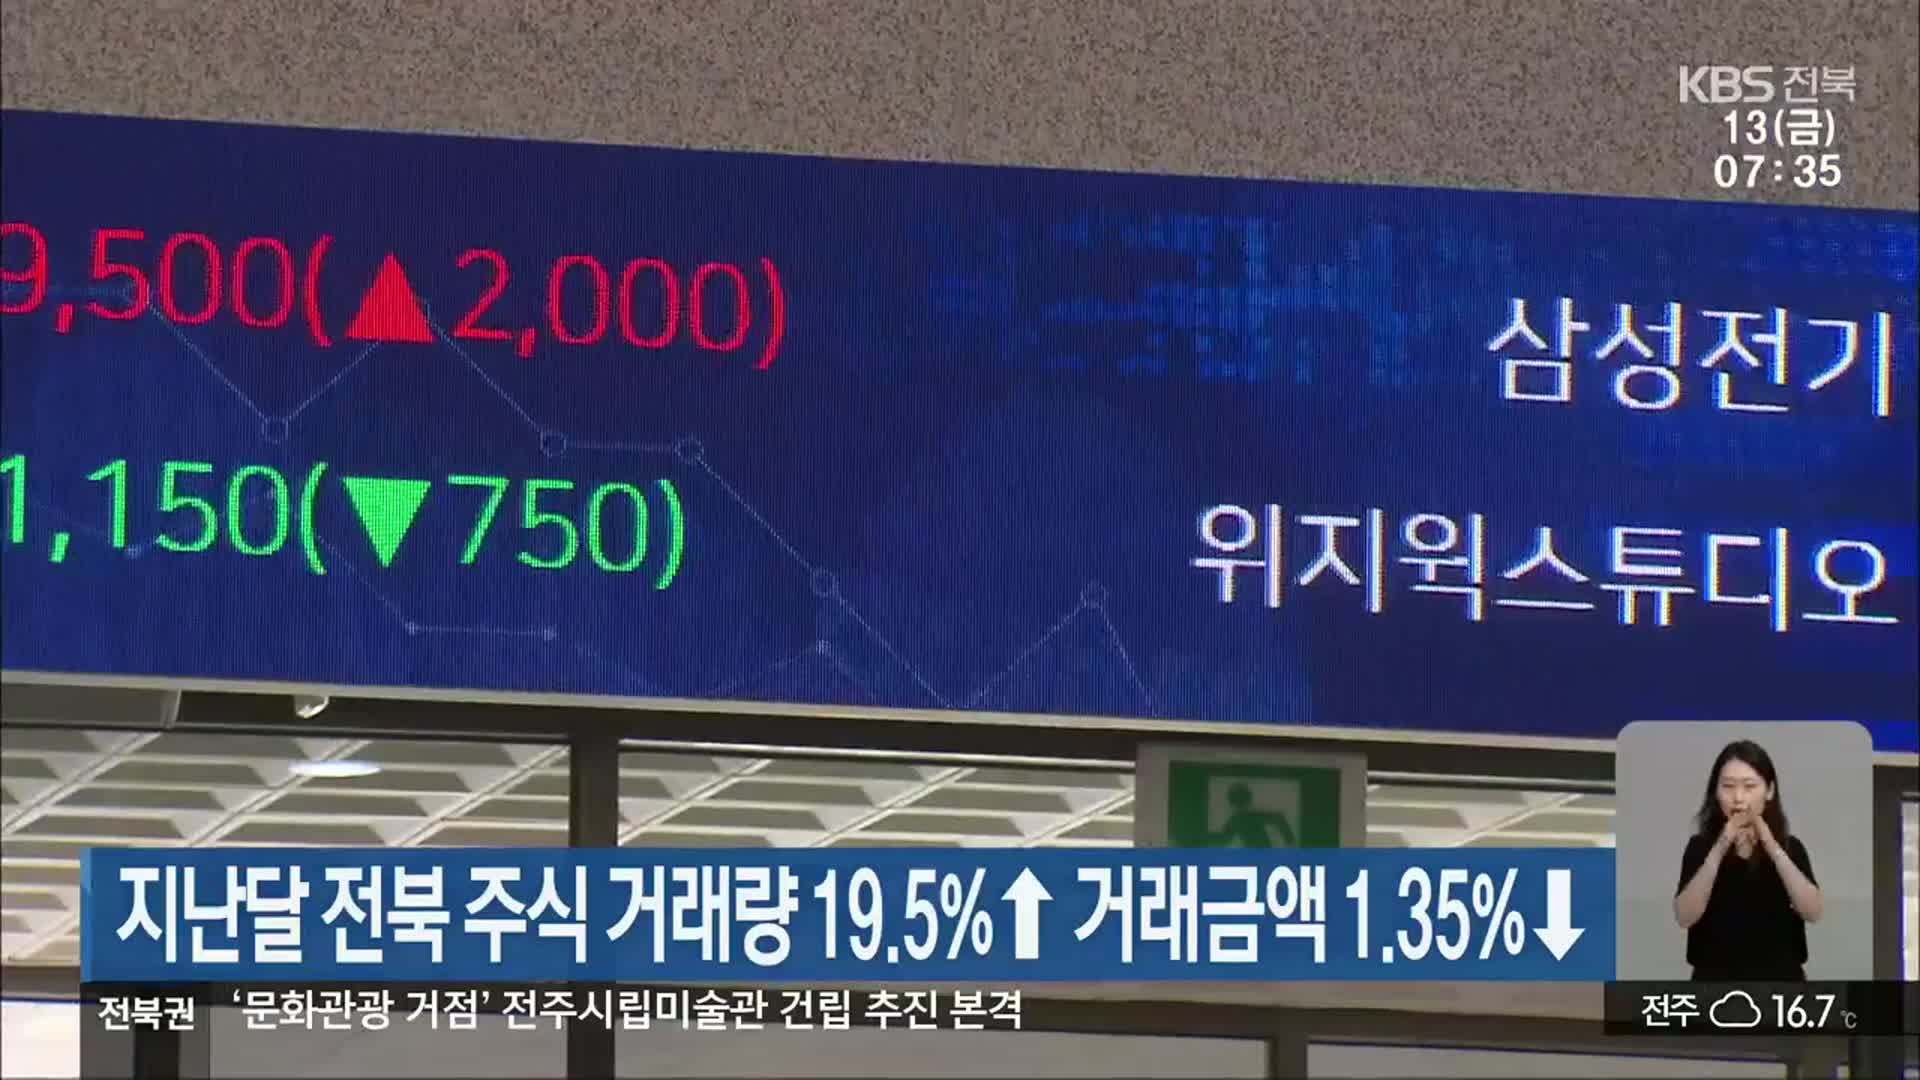 지난달 전북 주식 거래량 19.5%↑·거래금액 1.35%↓